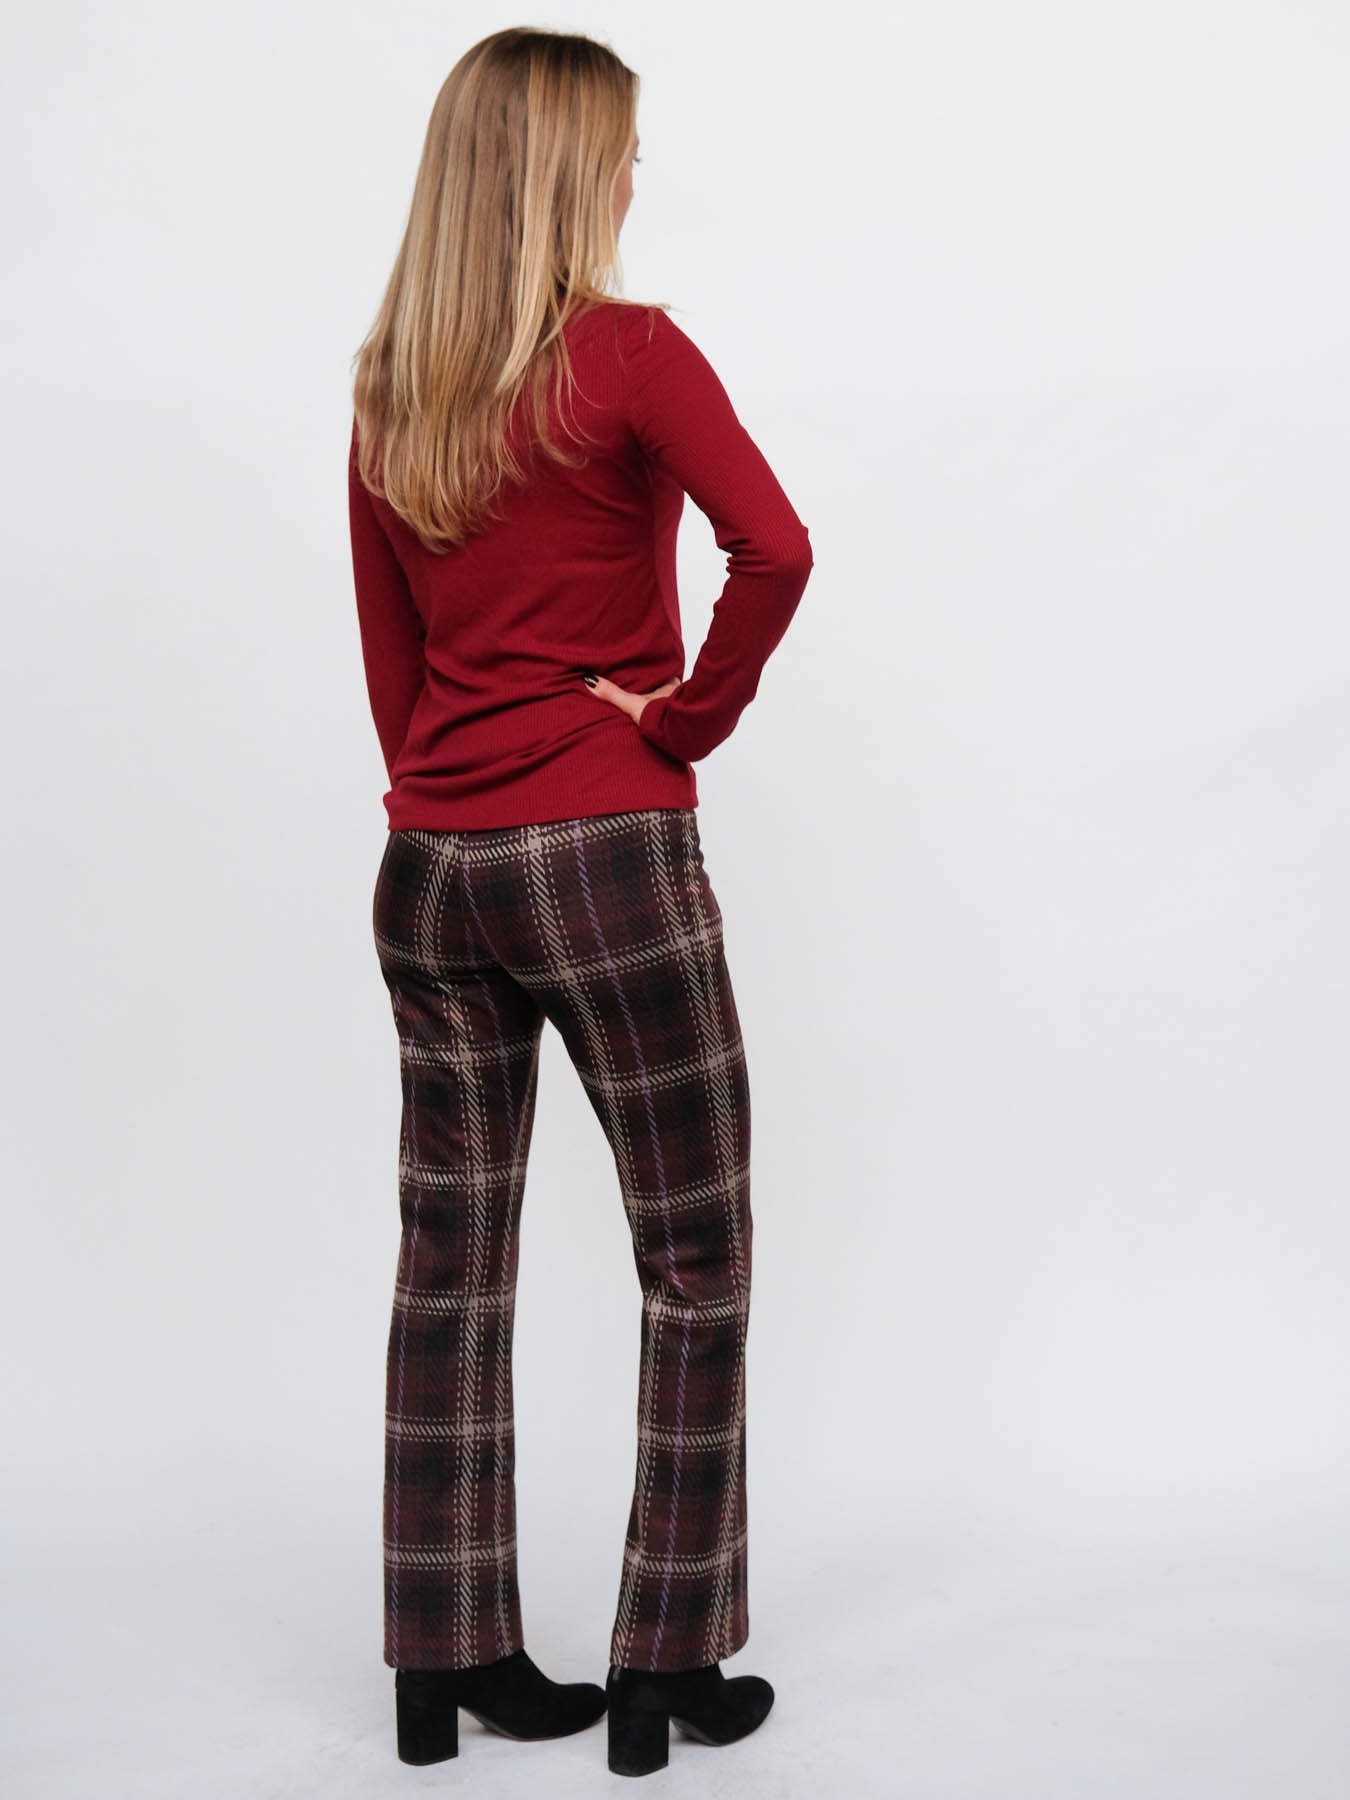 SARAH pant Brown plaid Knit - Lesley Evers-Bottoms-Pants-Shop